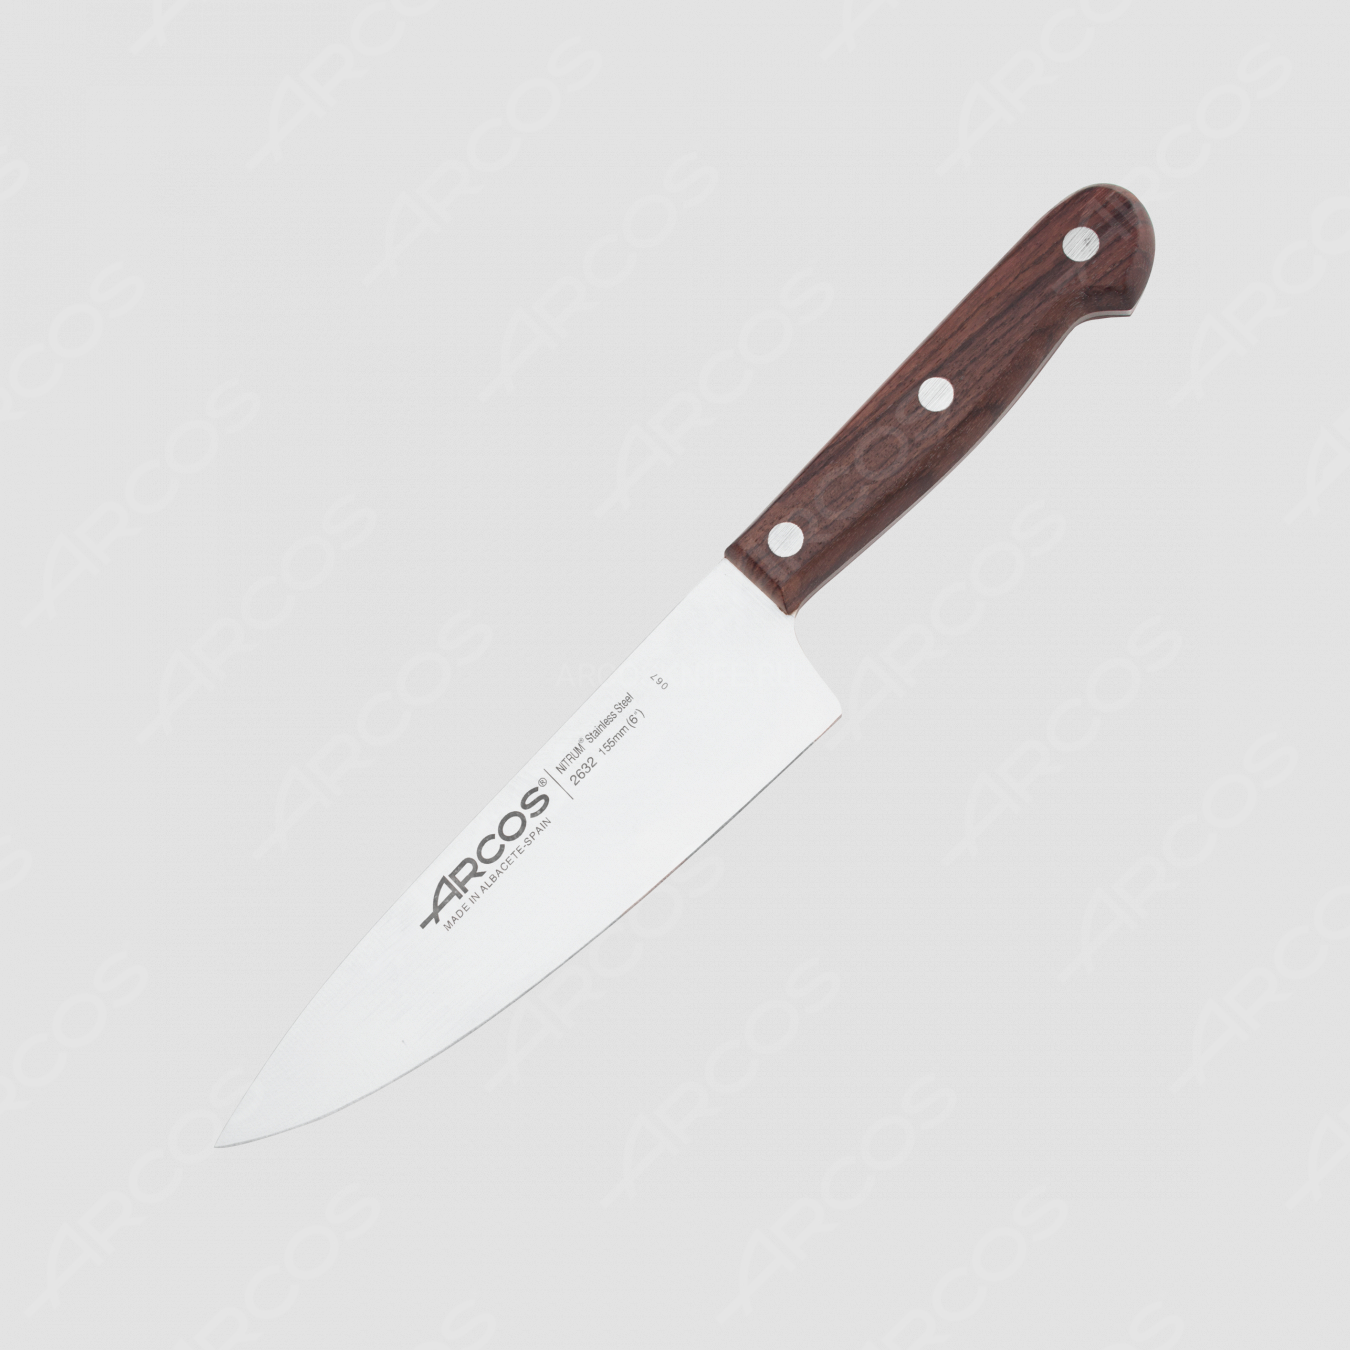 Нож кухонный поварской 15 см, серия Atlantico, ARCOS, Испания